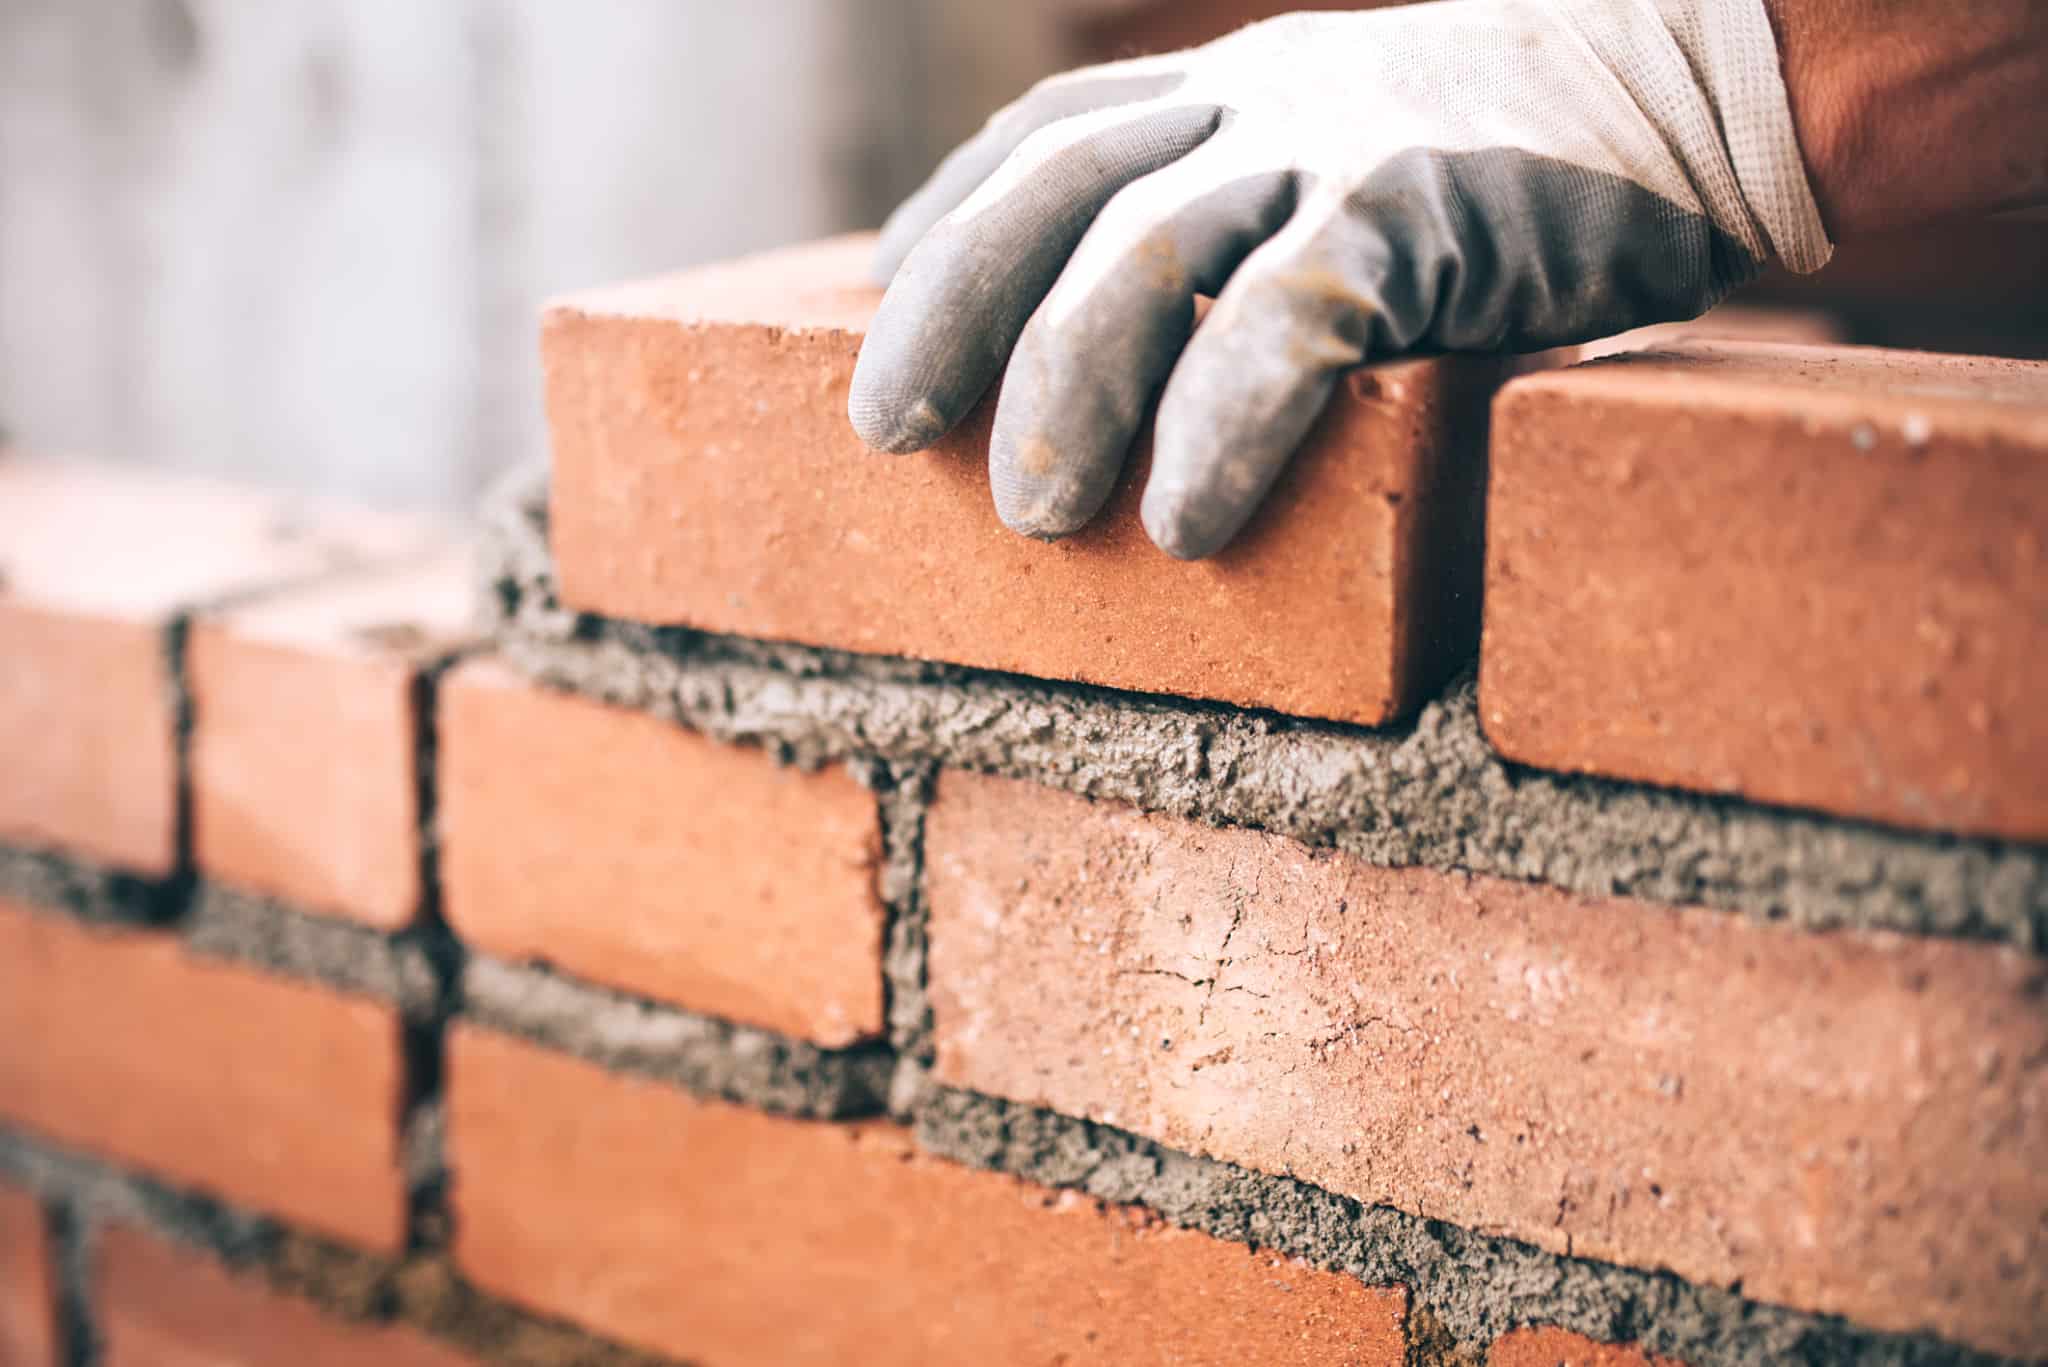 Updates underscore brick home's appeal